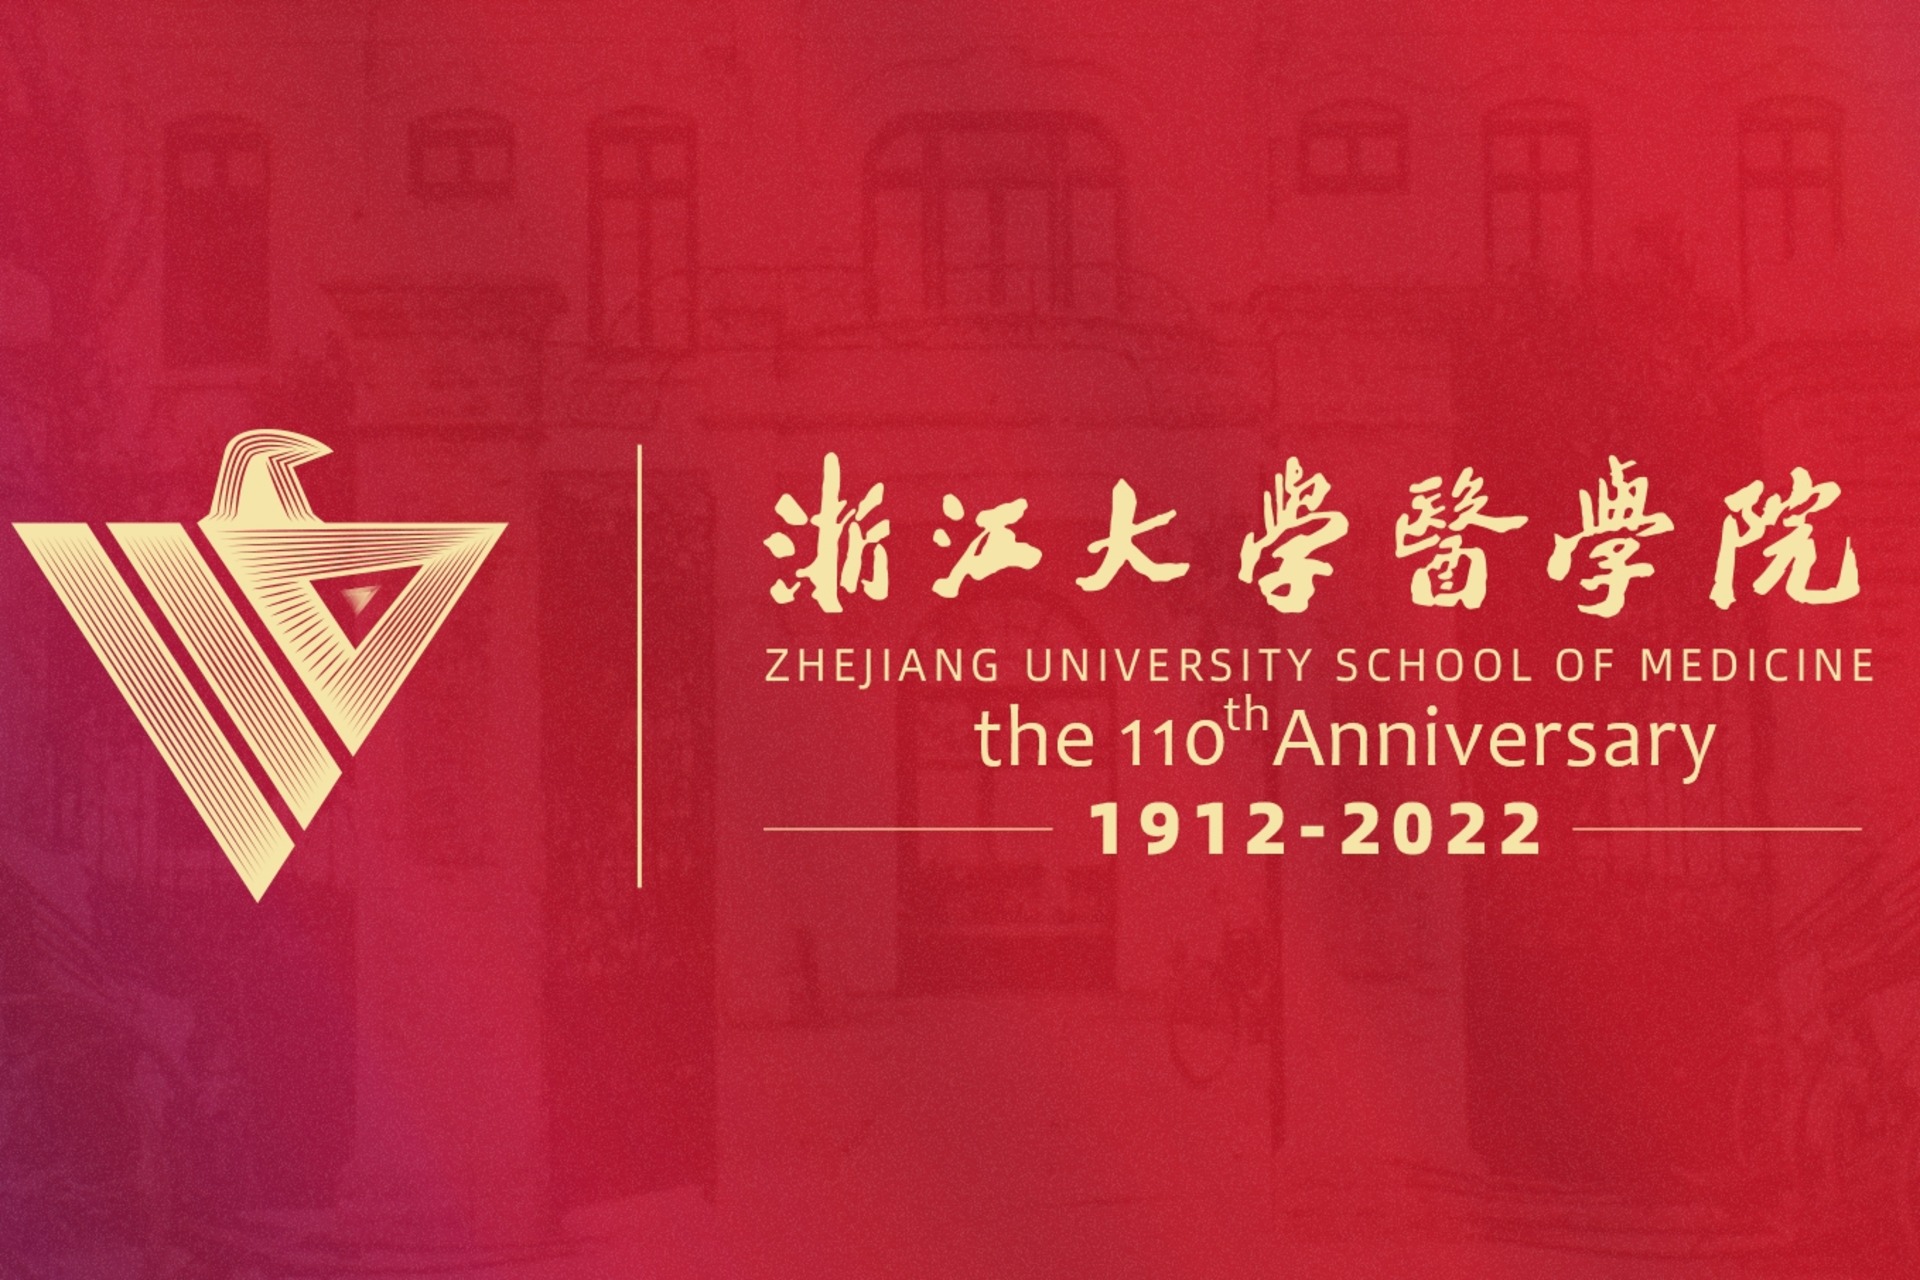 Healthcare: la Zhejiang University School of Medicine nell’omonima Provincia cinese è una delle più antiche scuole sanitarie del Paese, essendo stata fondata il primo giugno 1912: nel 2022 ha festeggiato così 110 anni